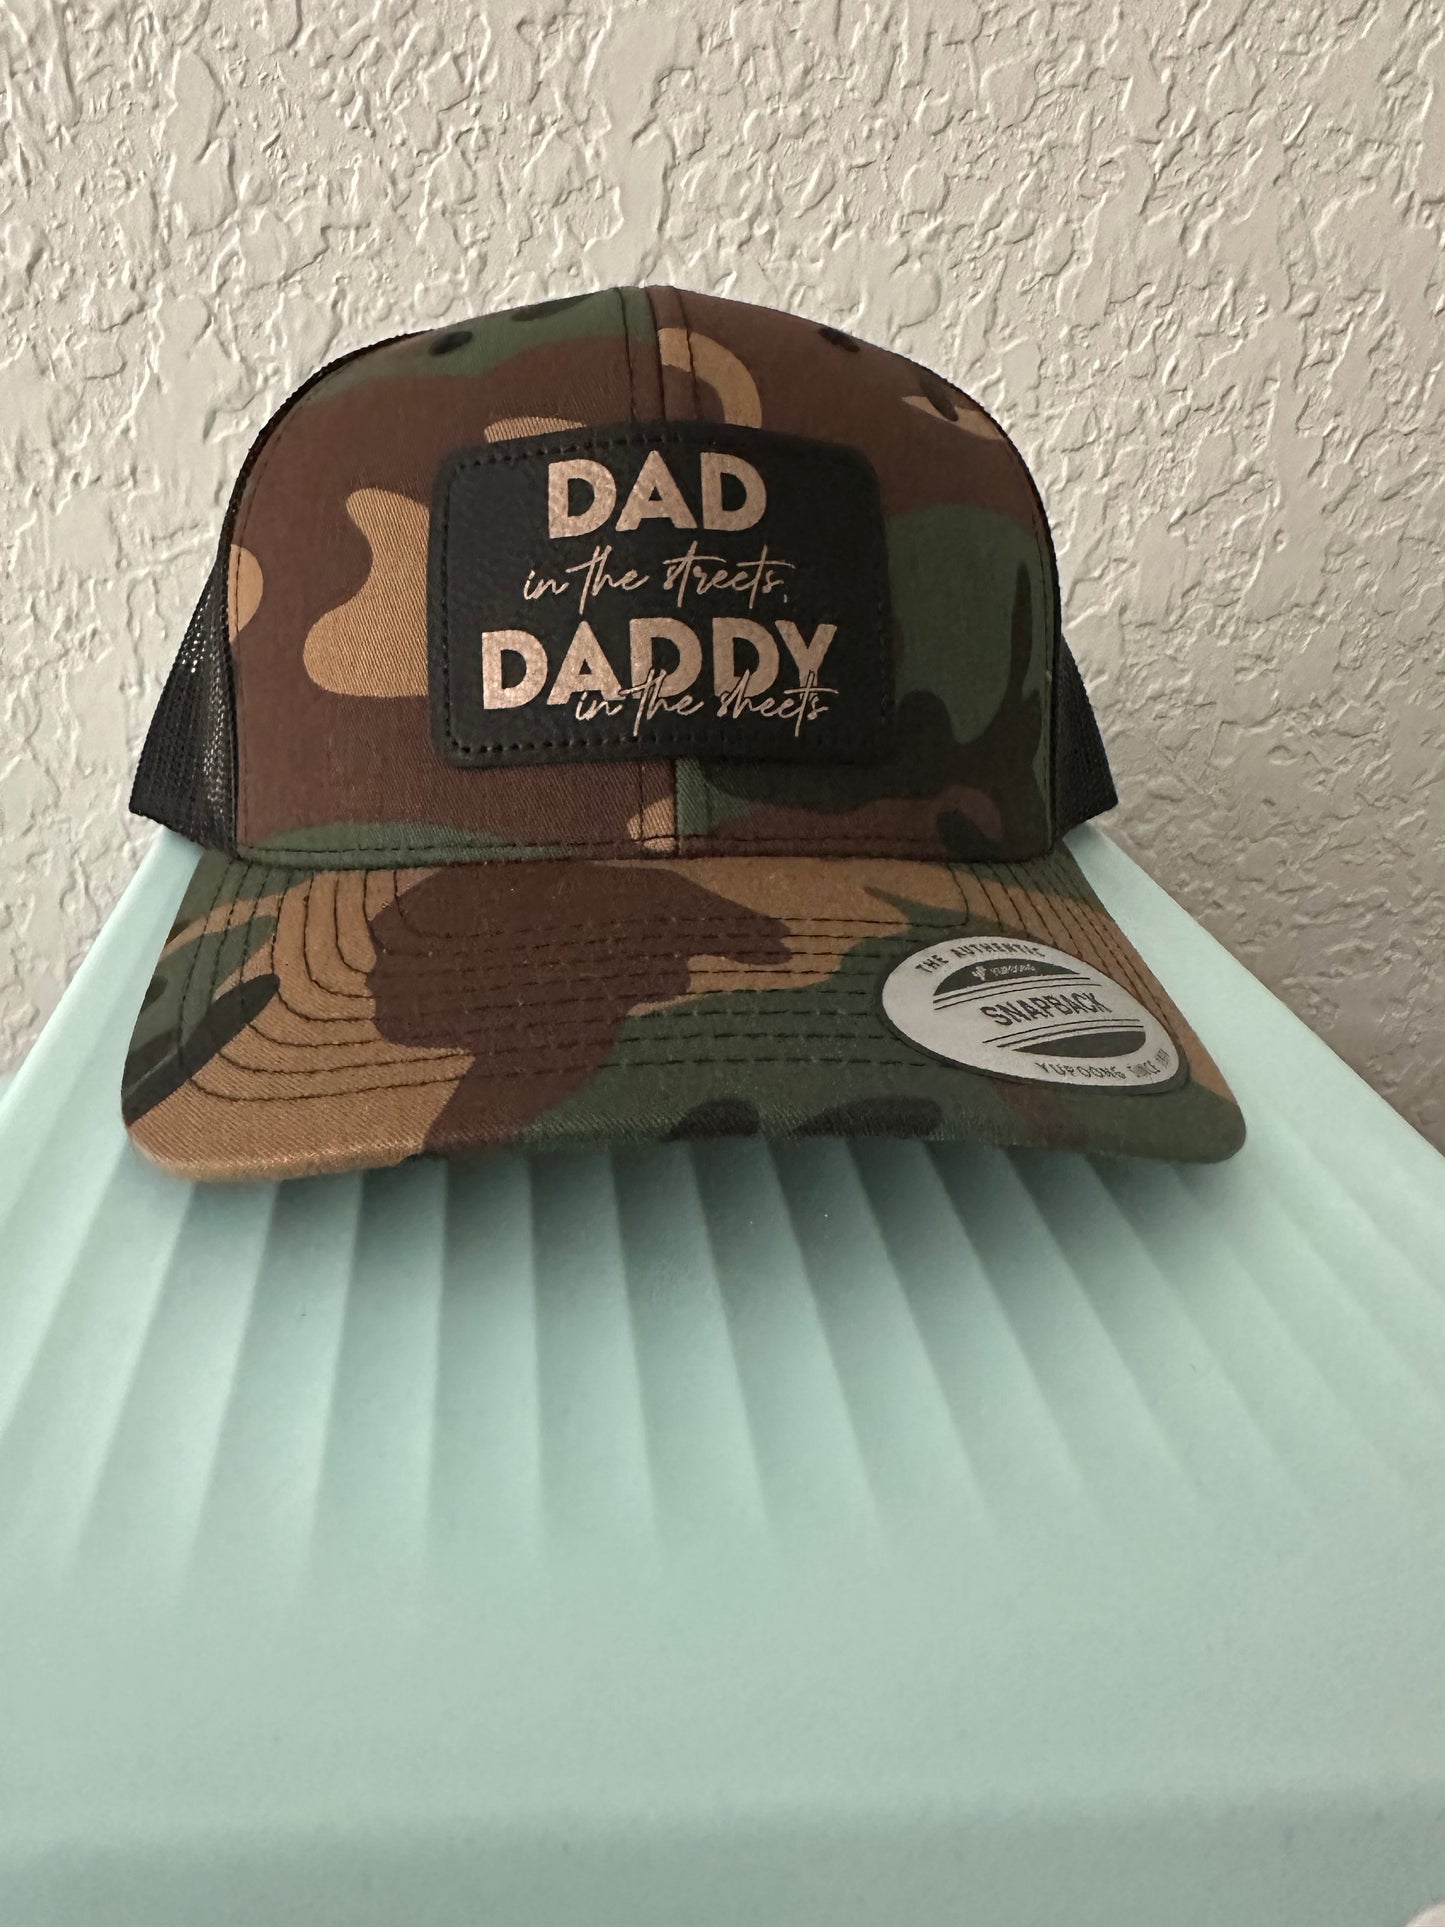 Dad Hat